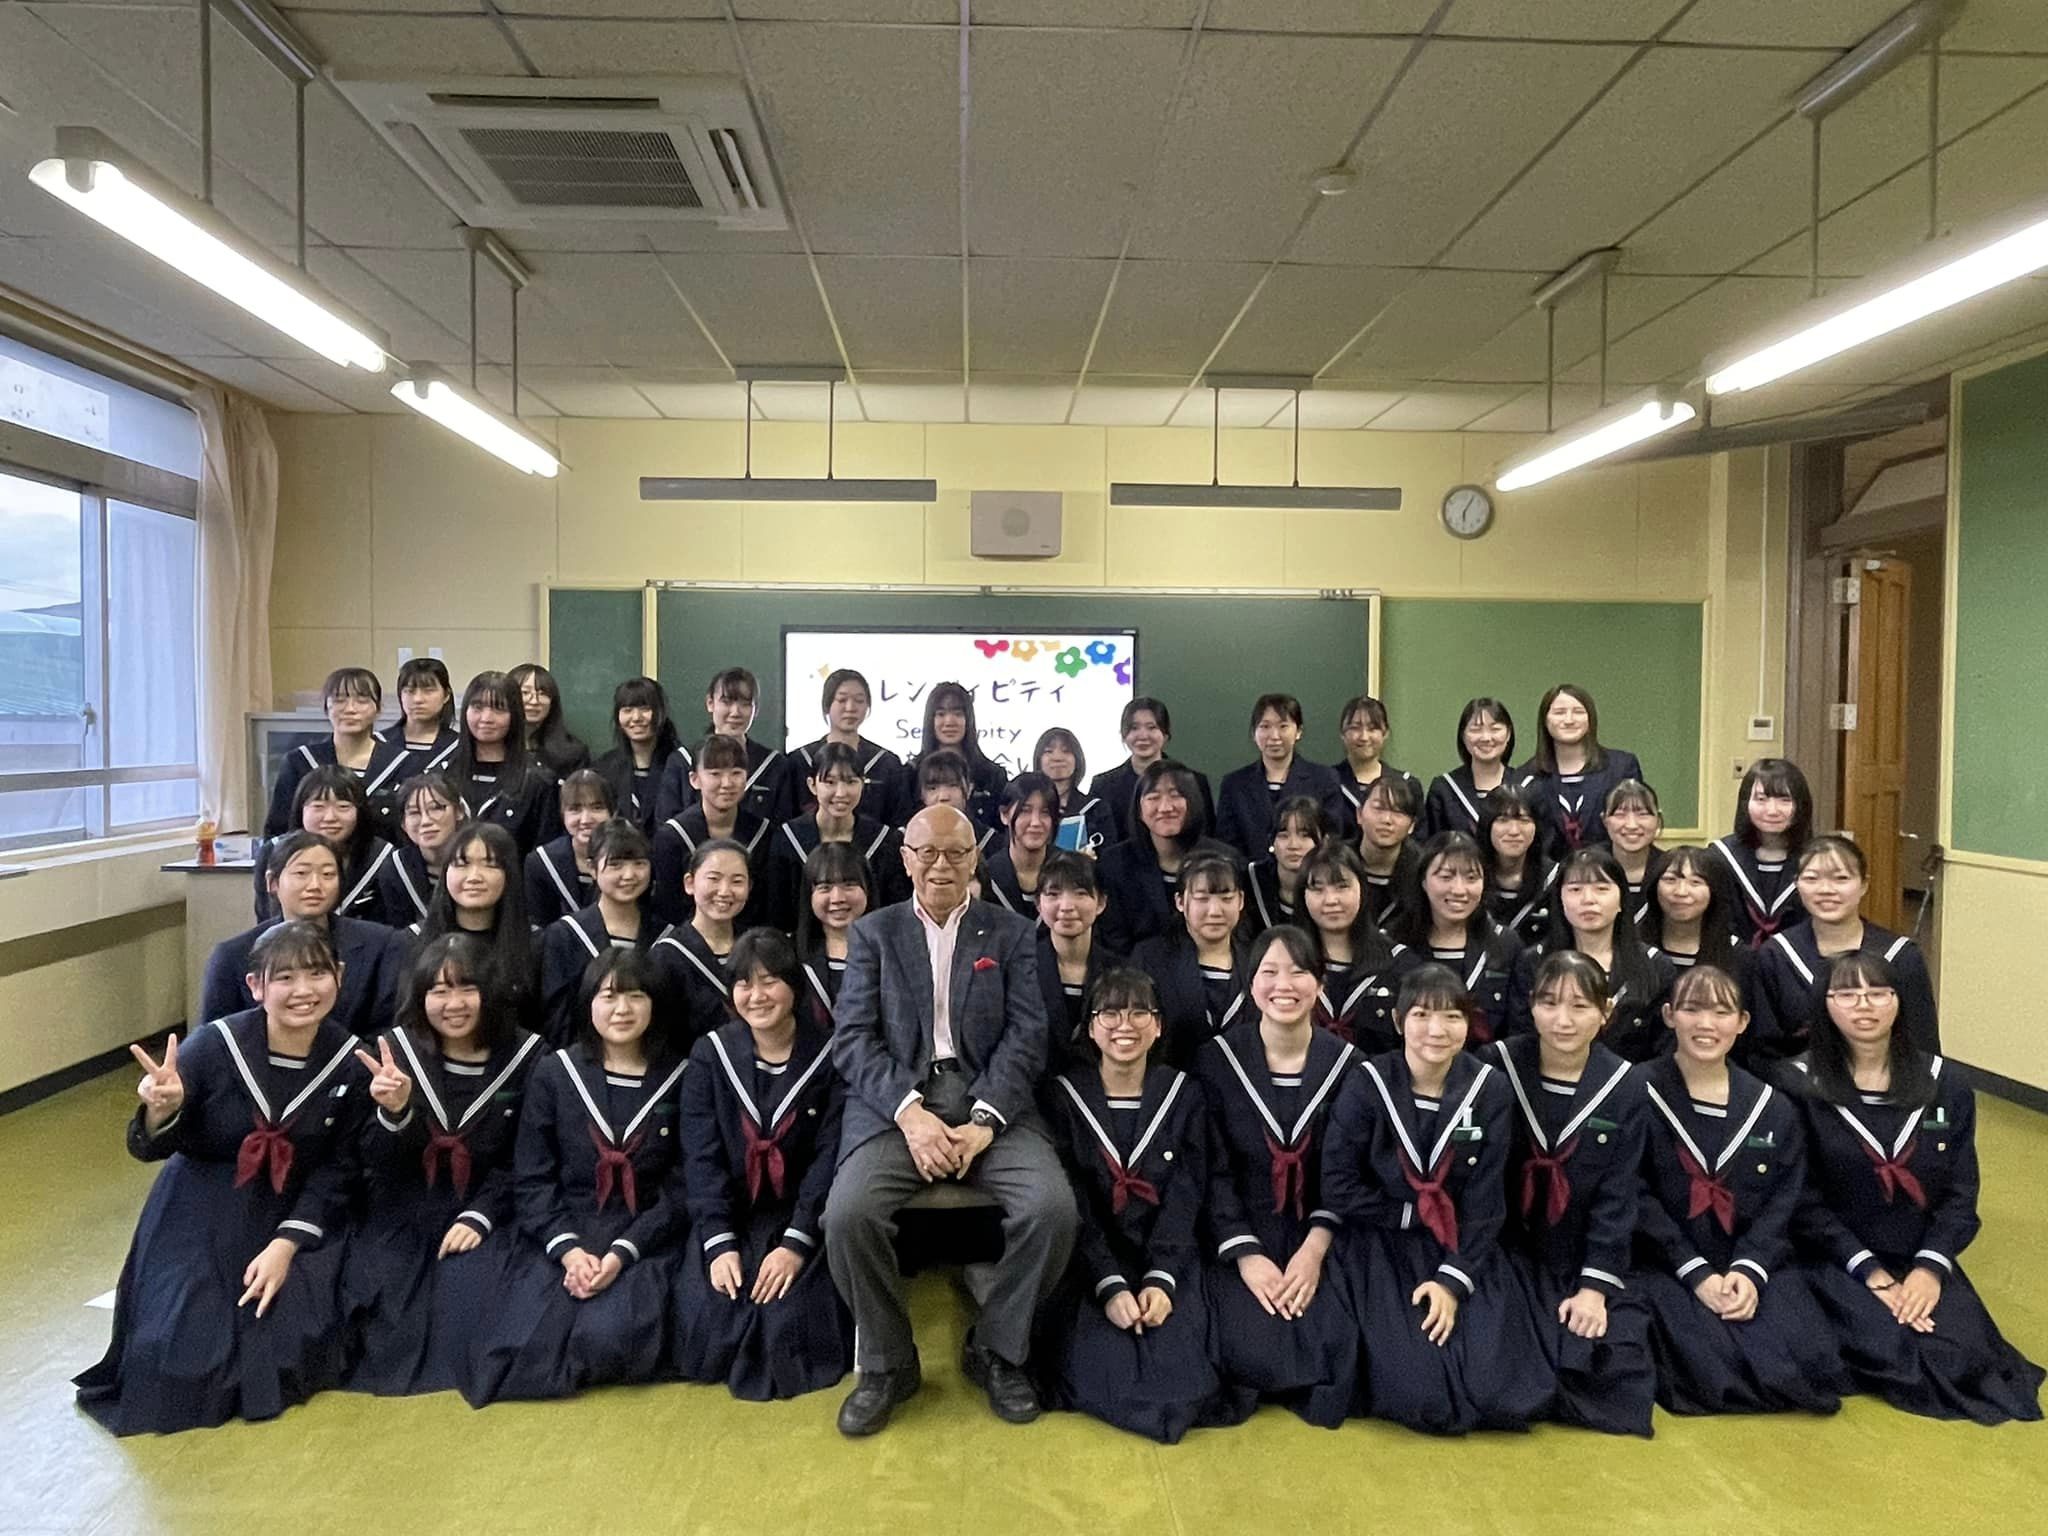 4月18日(火)放課後、岩谷英昭氏を招いて、特別講演会が開催されました。